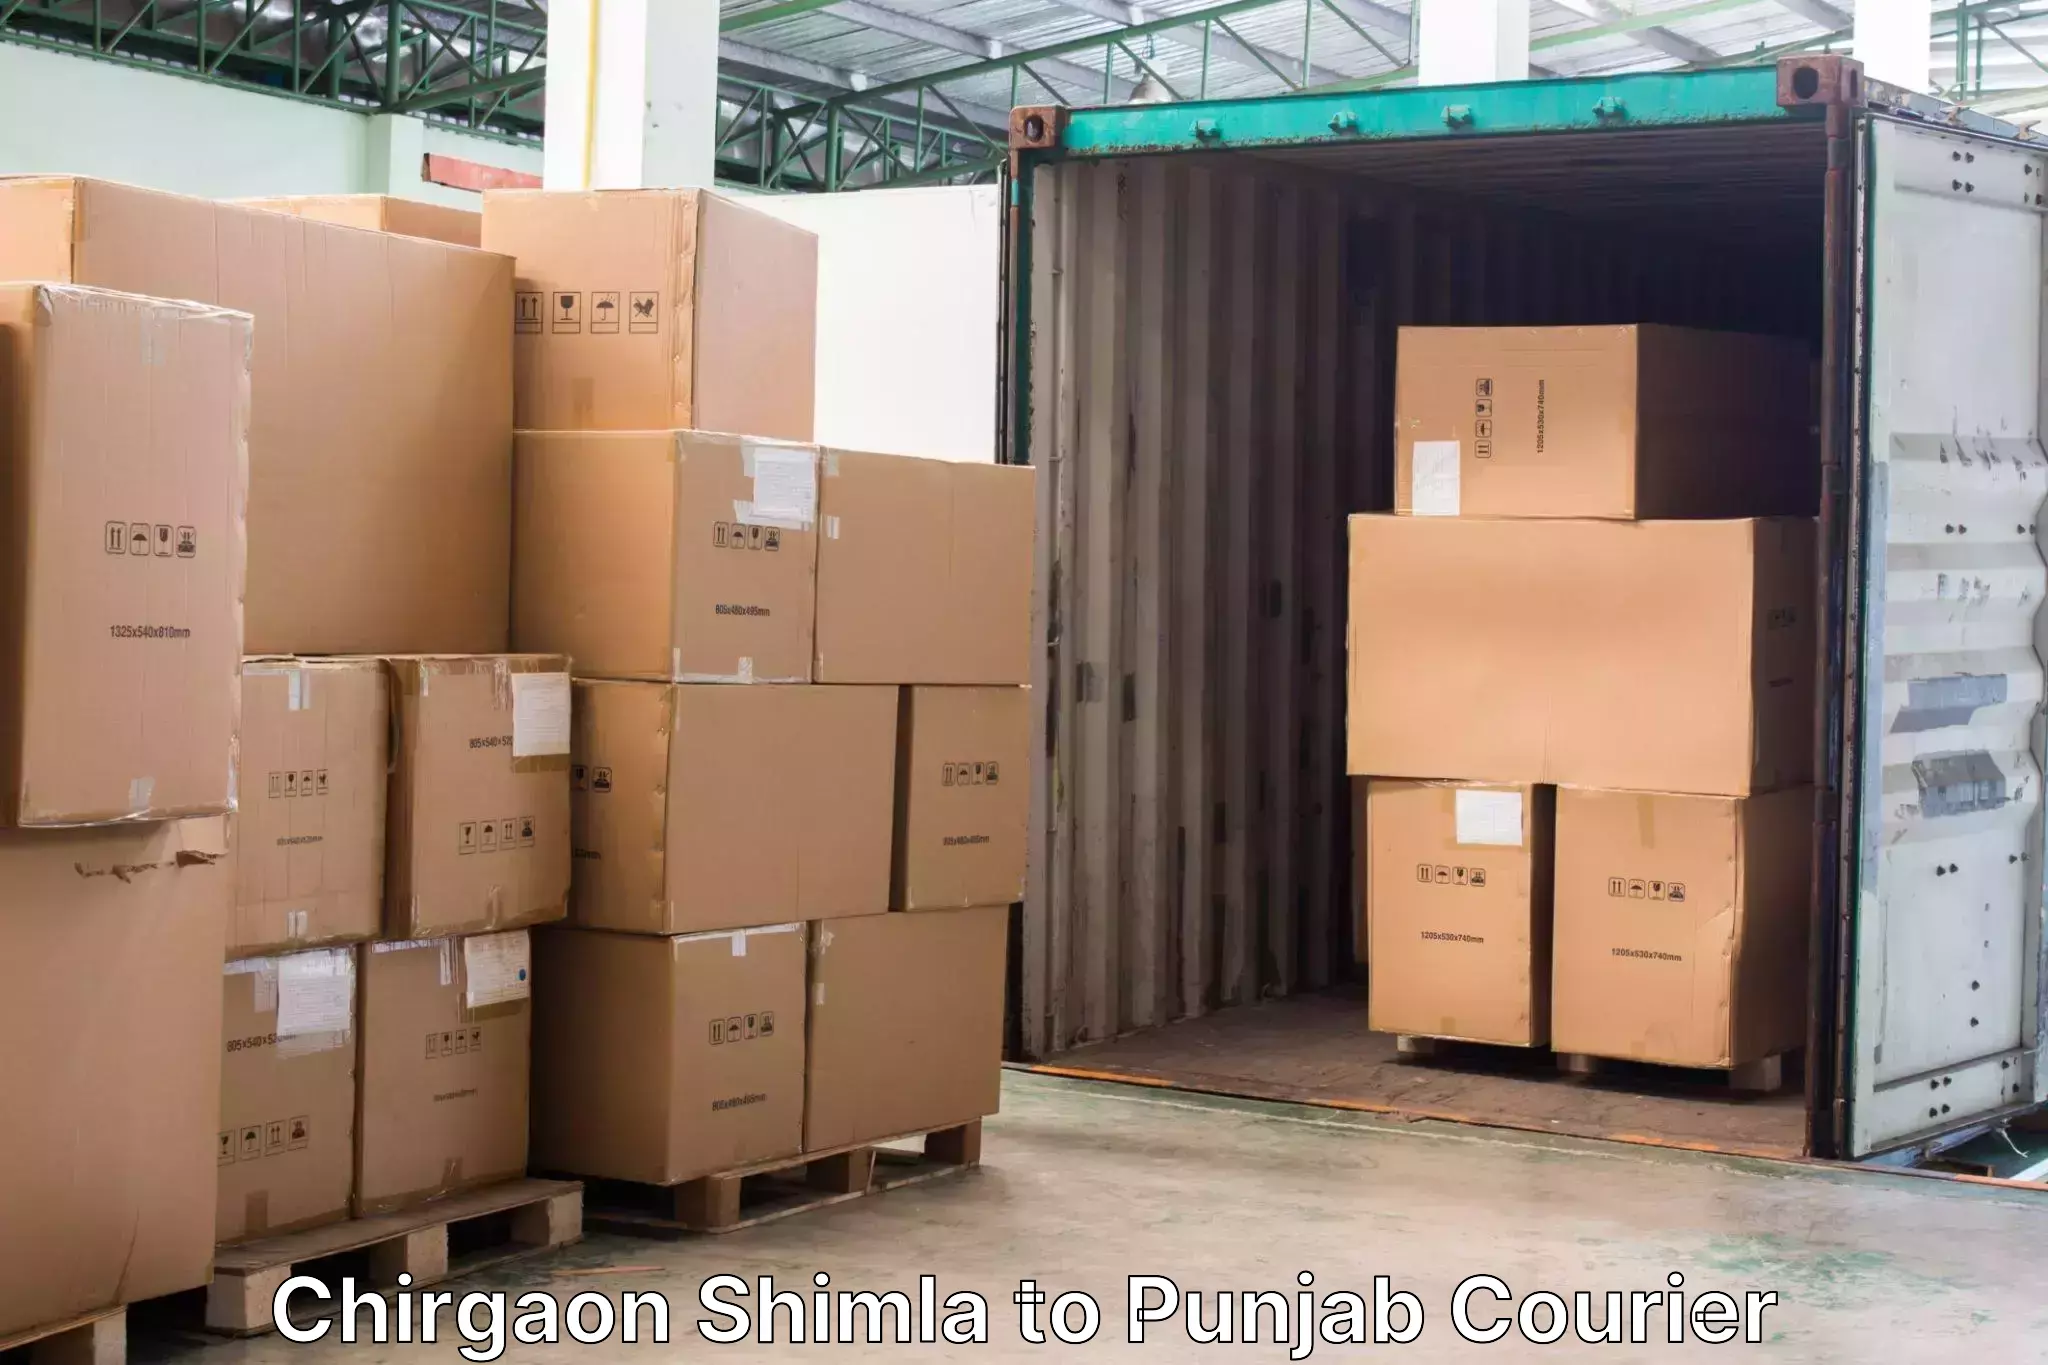 Baggage transport management Chirgaon Shimla to Punjab